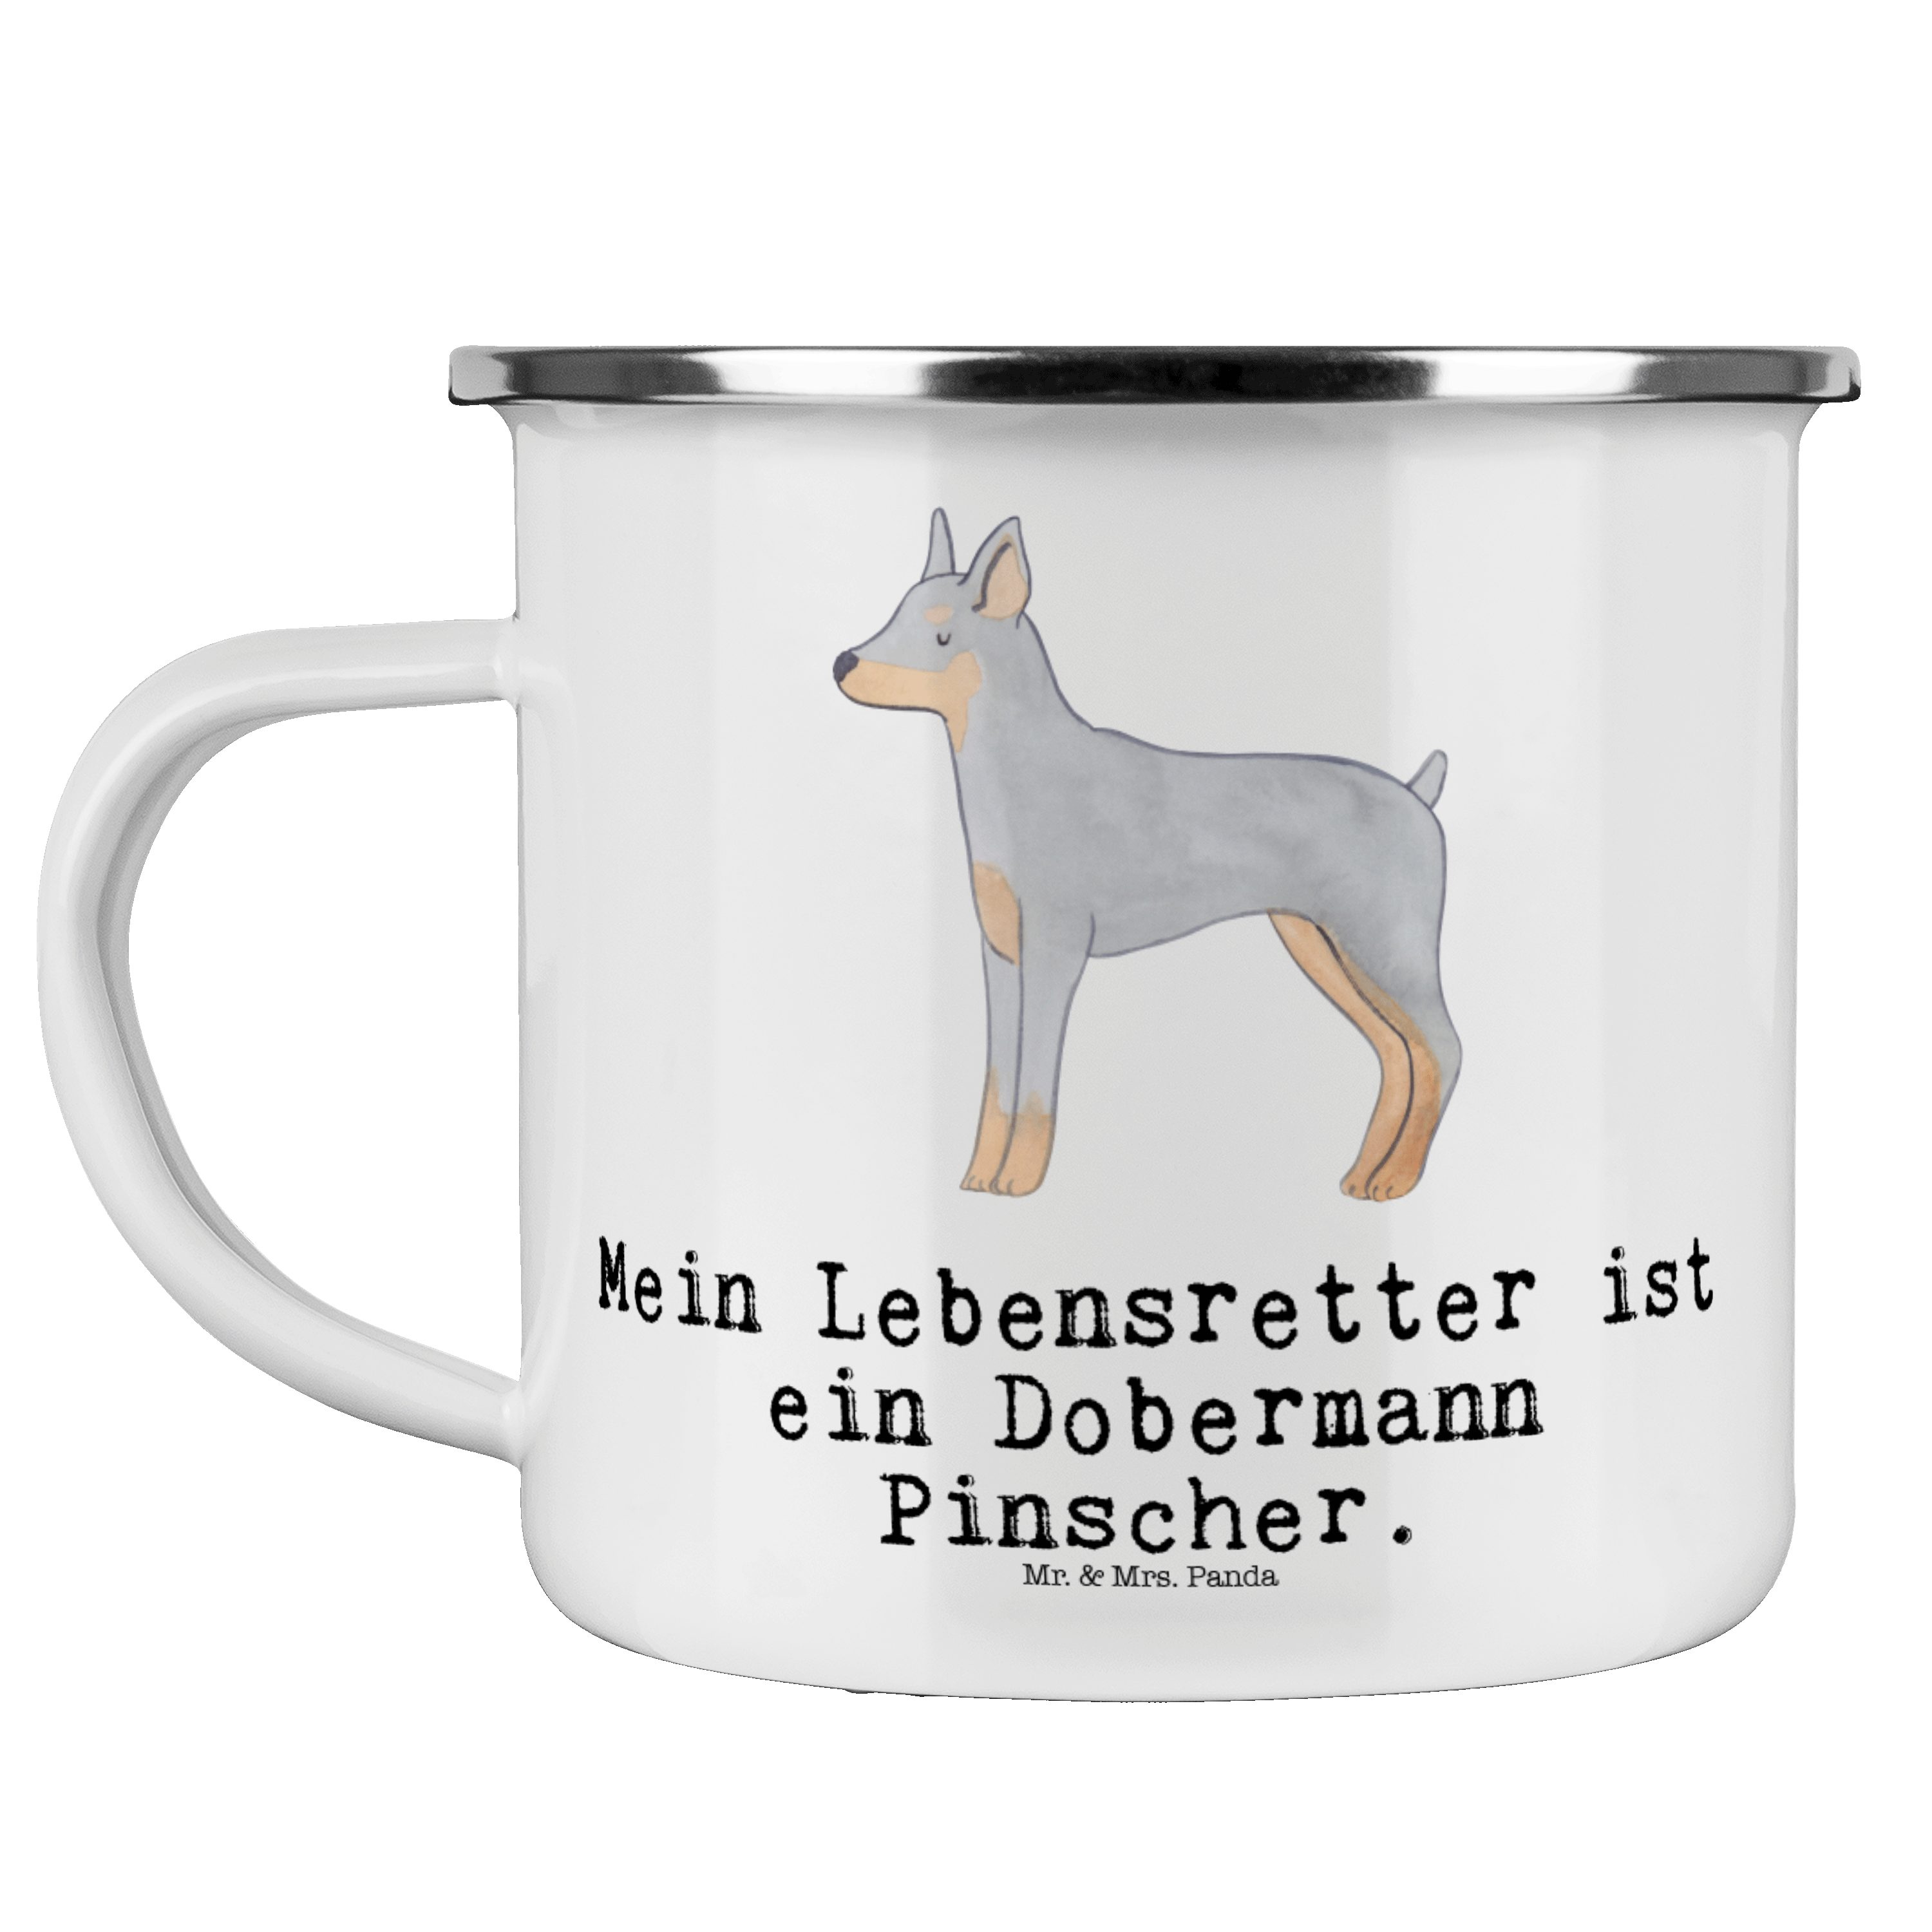 Mr. & Mrs. Panda Becher Dobermann Pinscher Lebensretter - Weiß - Geschenk, Emaille Campingbec, Emaille